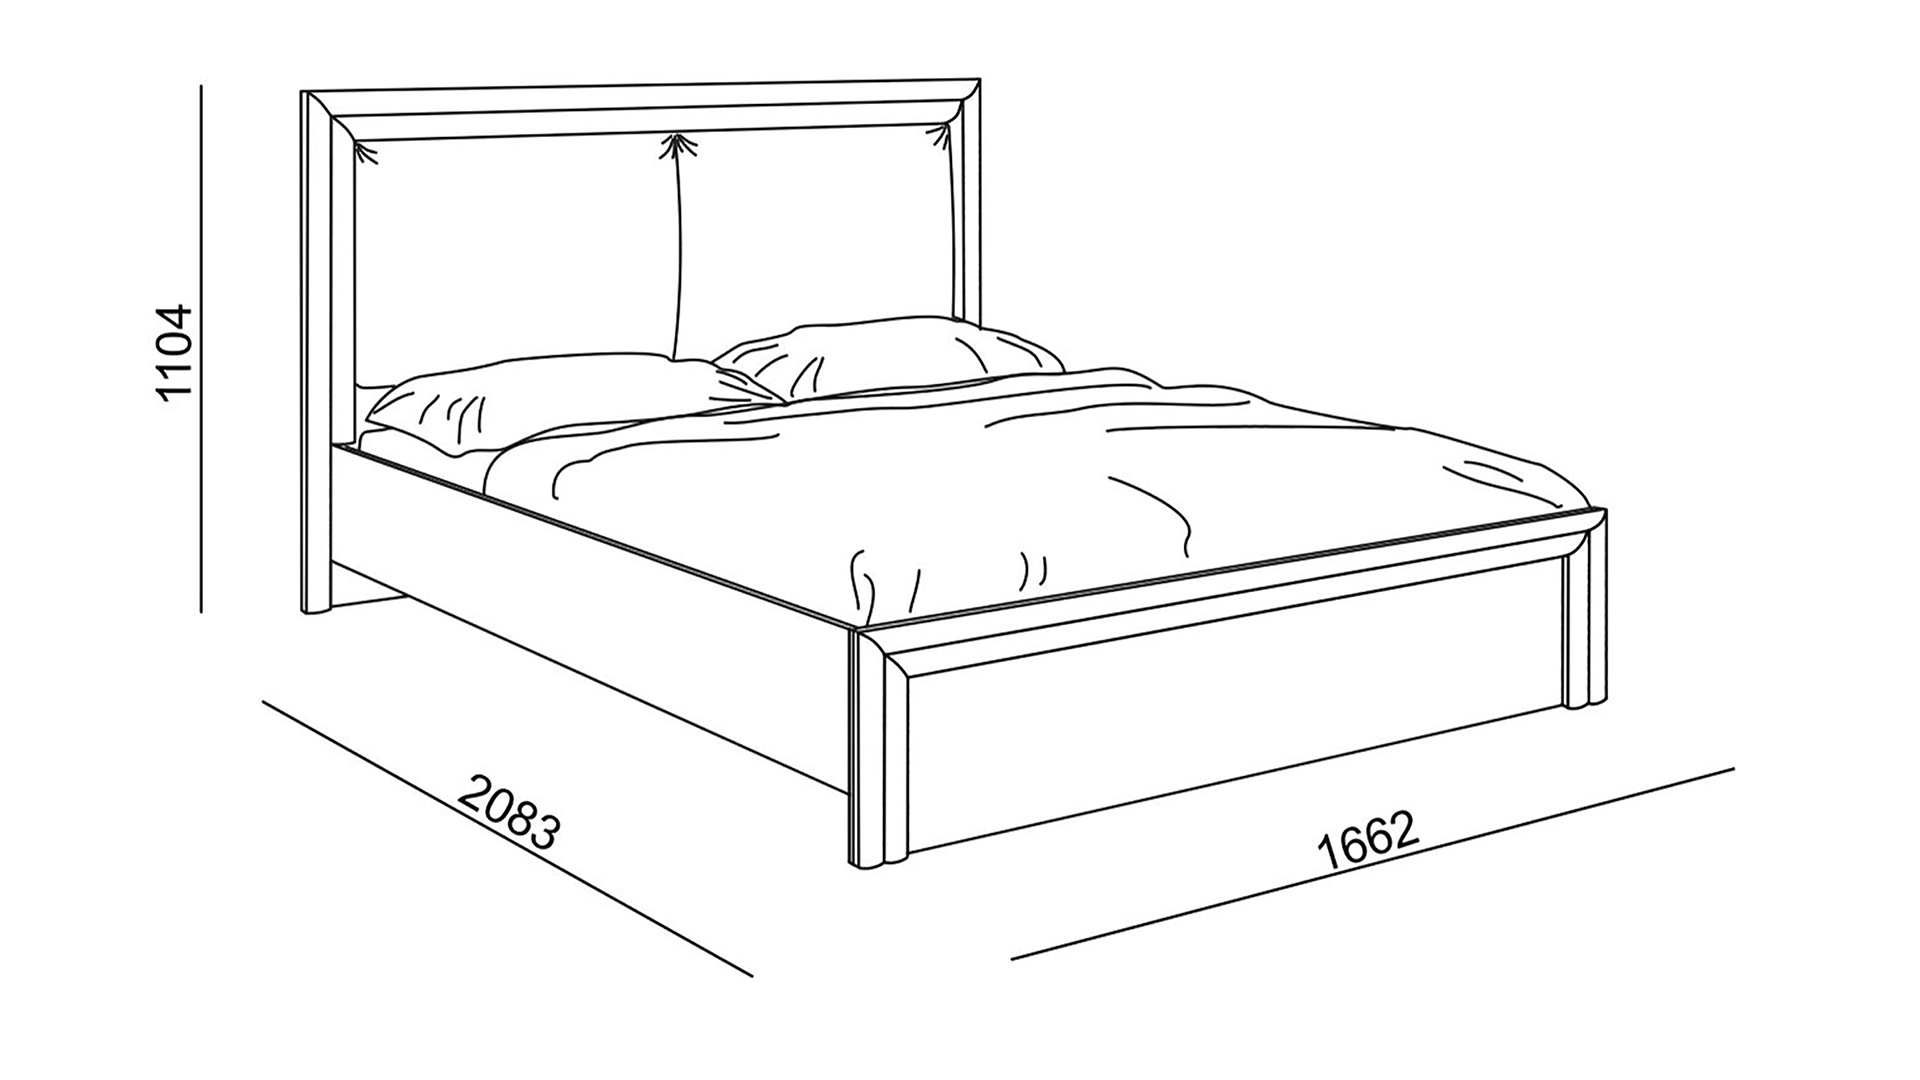 Кровать полуторка размер. Высота кровати от пола стандарт. Кровать евро длина 212 ширина 191 высота 25 схема сборки. Эскиз кровати с размерами. 1 5 Спальная кровать Размеры.